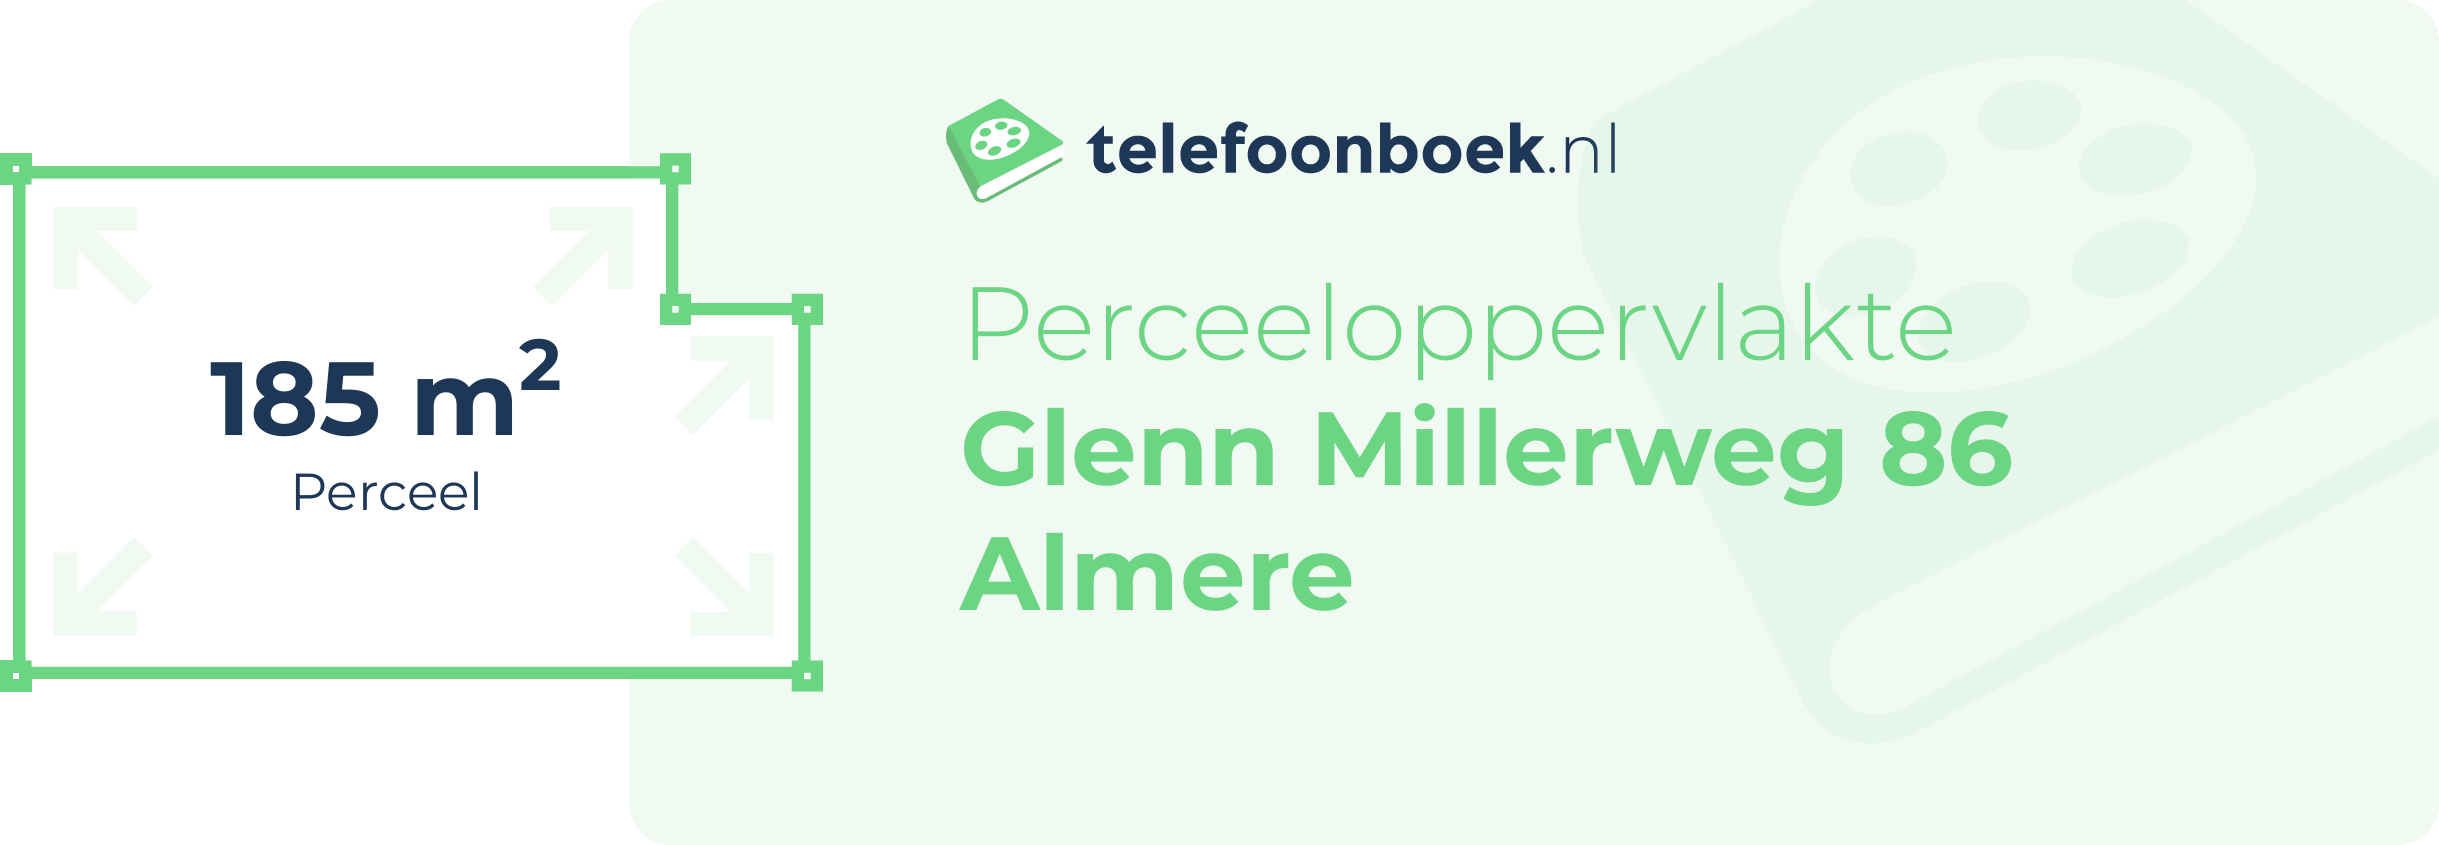 Perceeloppervlakte Glenn Millerweg 86 Almere